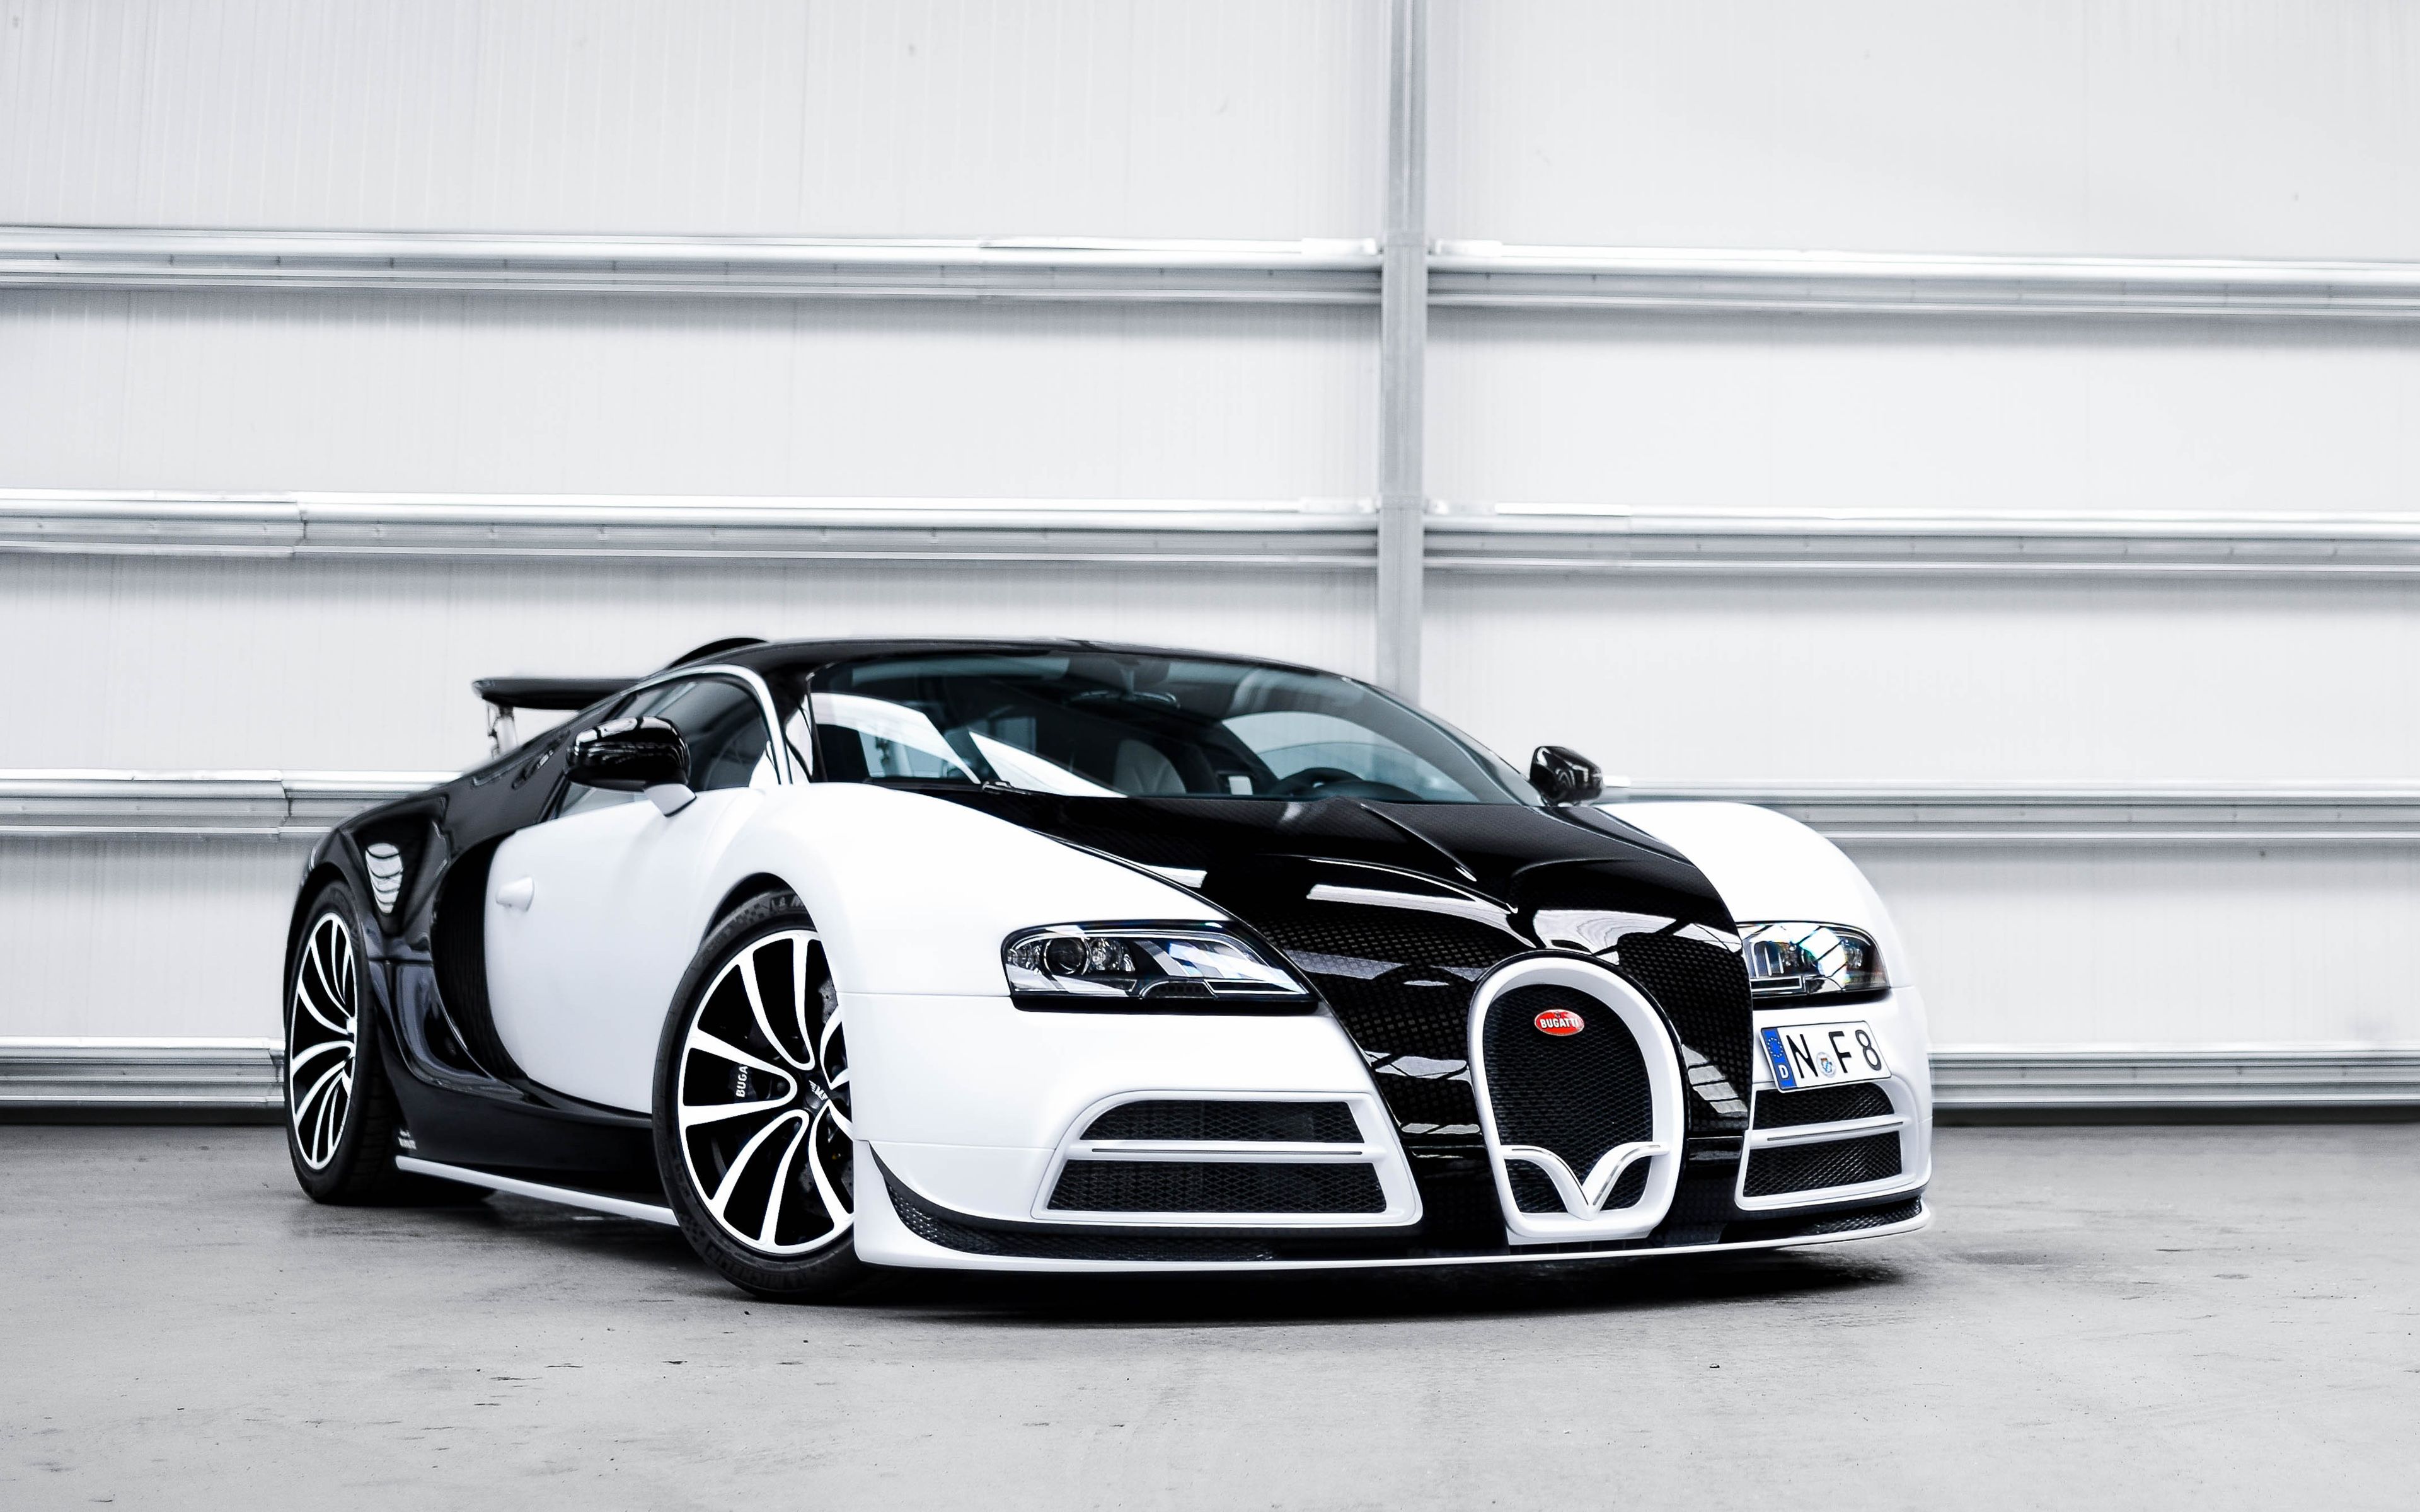 Download wallpaper Bugatti Veyron, mansory vivere, 4k, hypercar